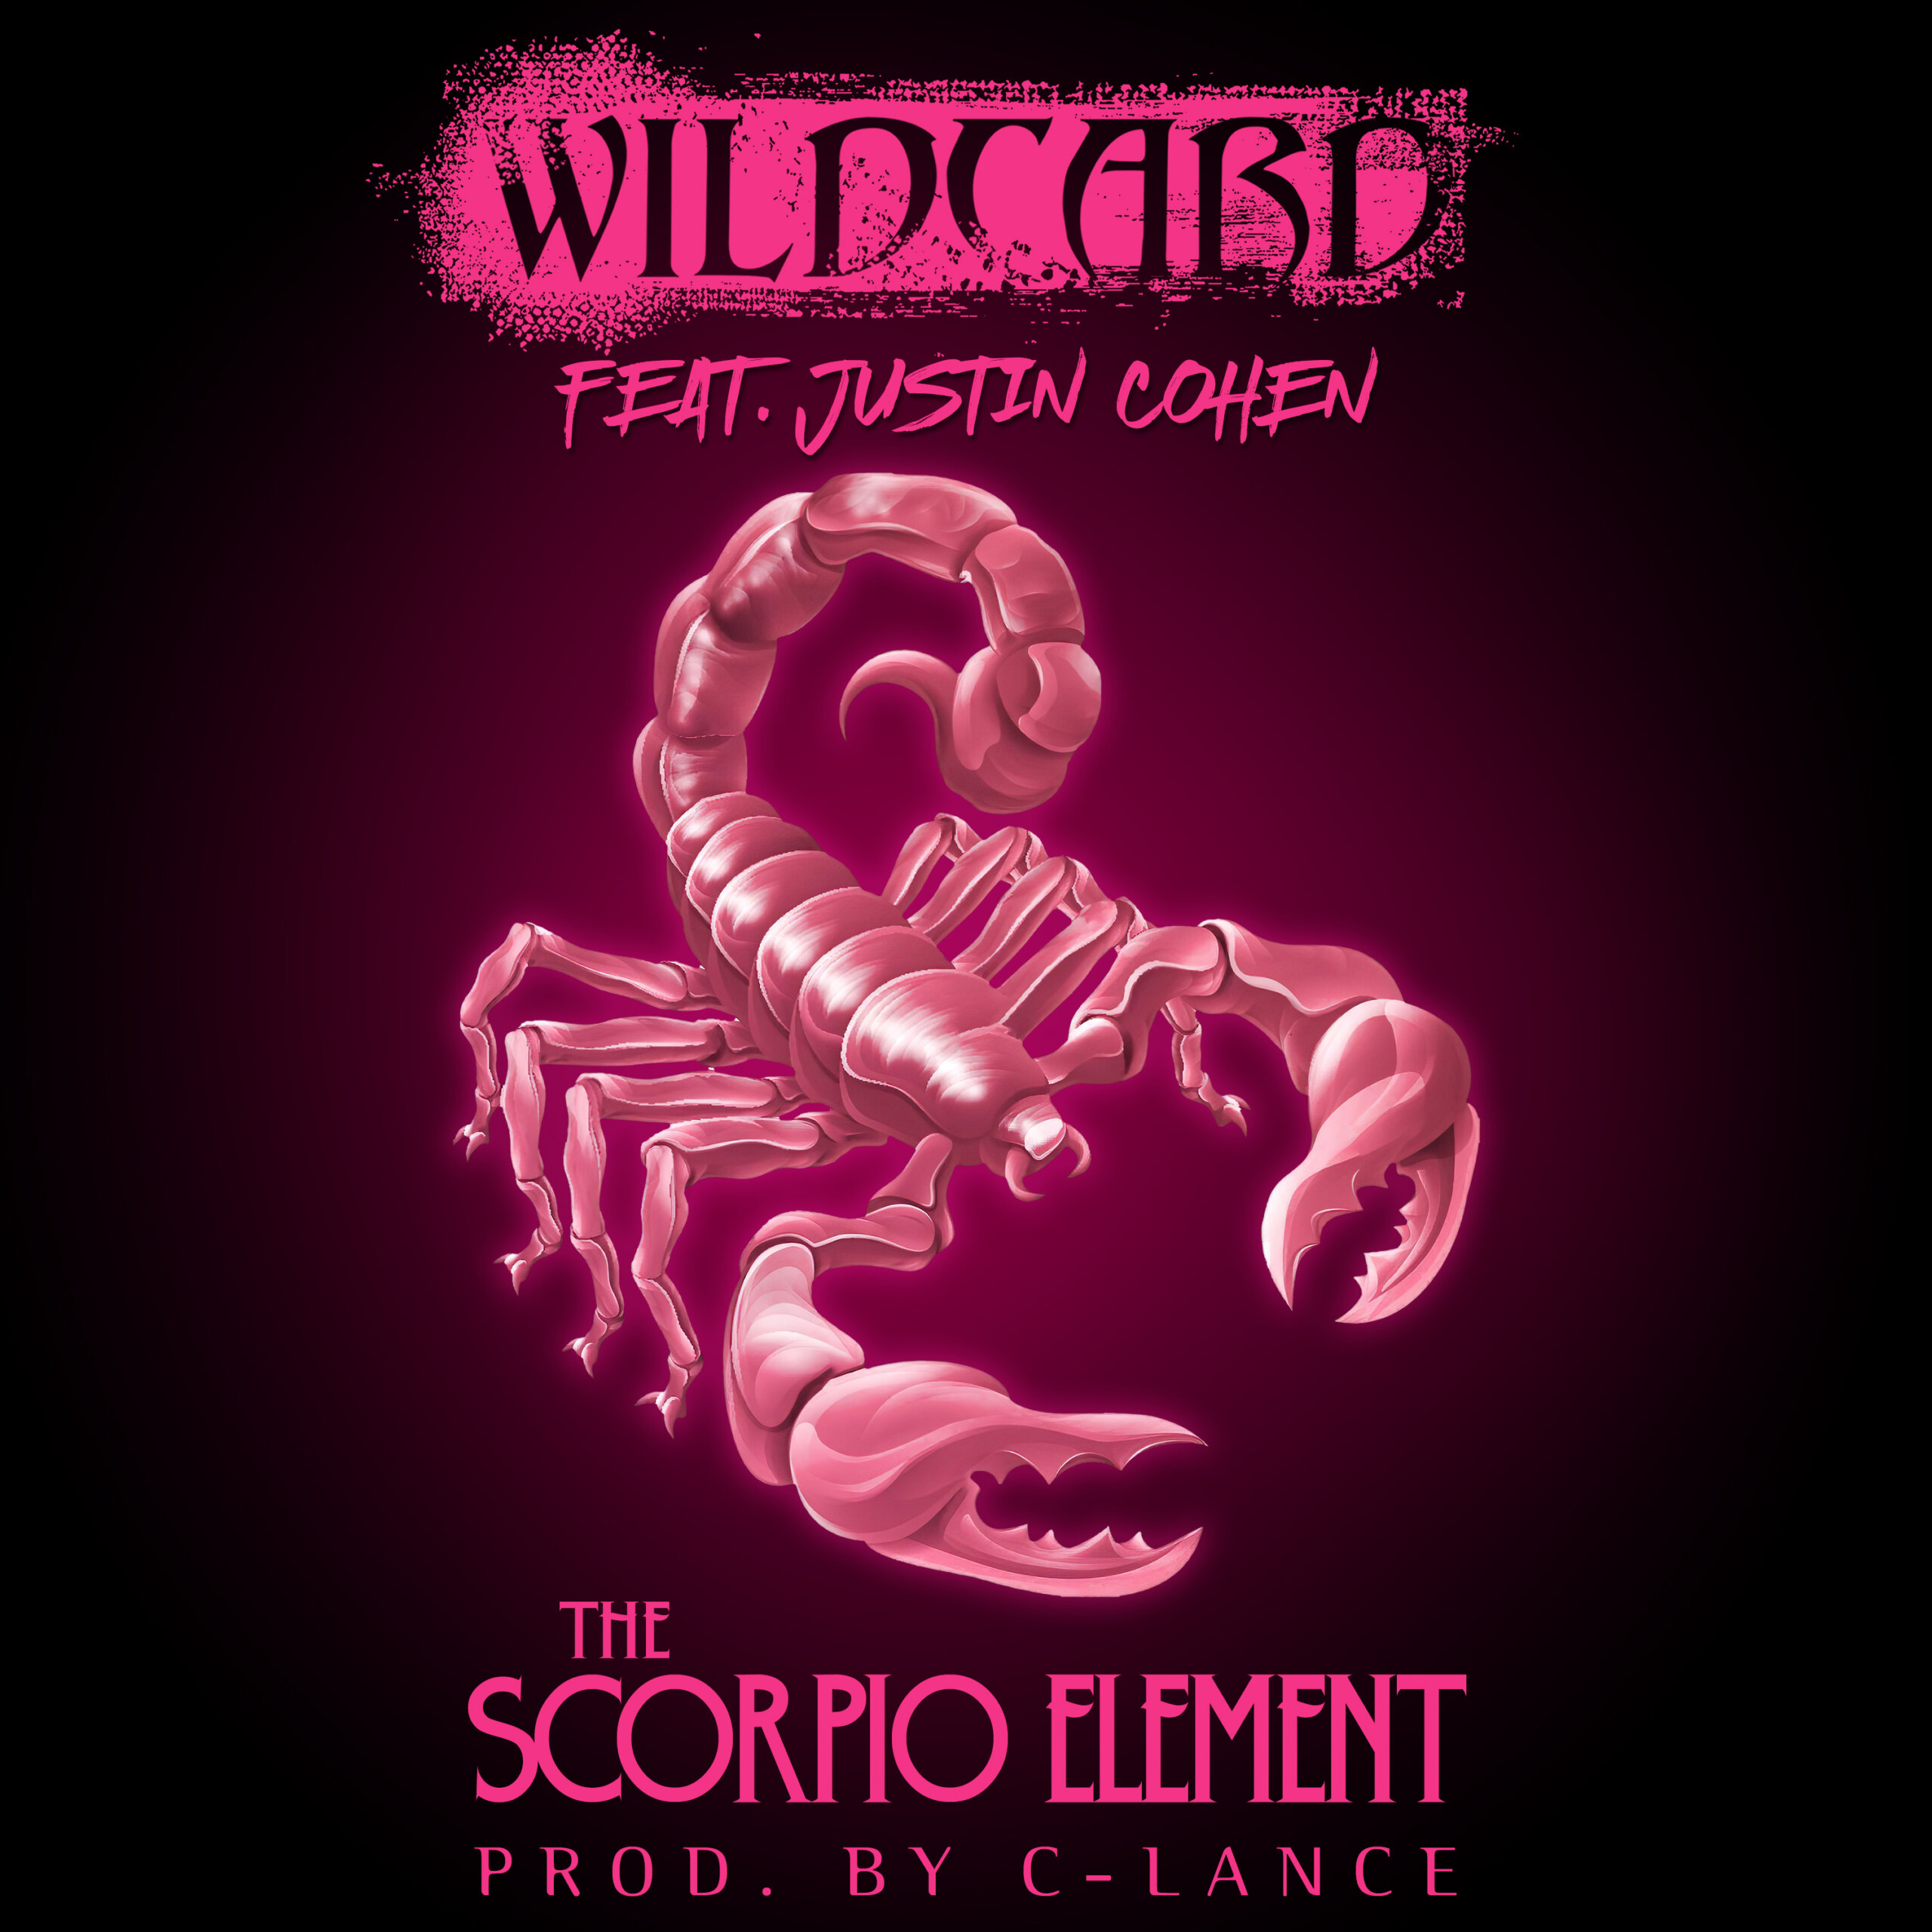 Wildcard feat. Justin Cohen “The Scorpio Element” (Audio)